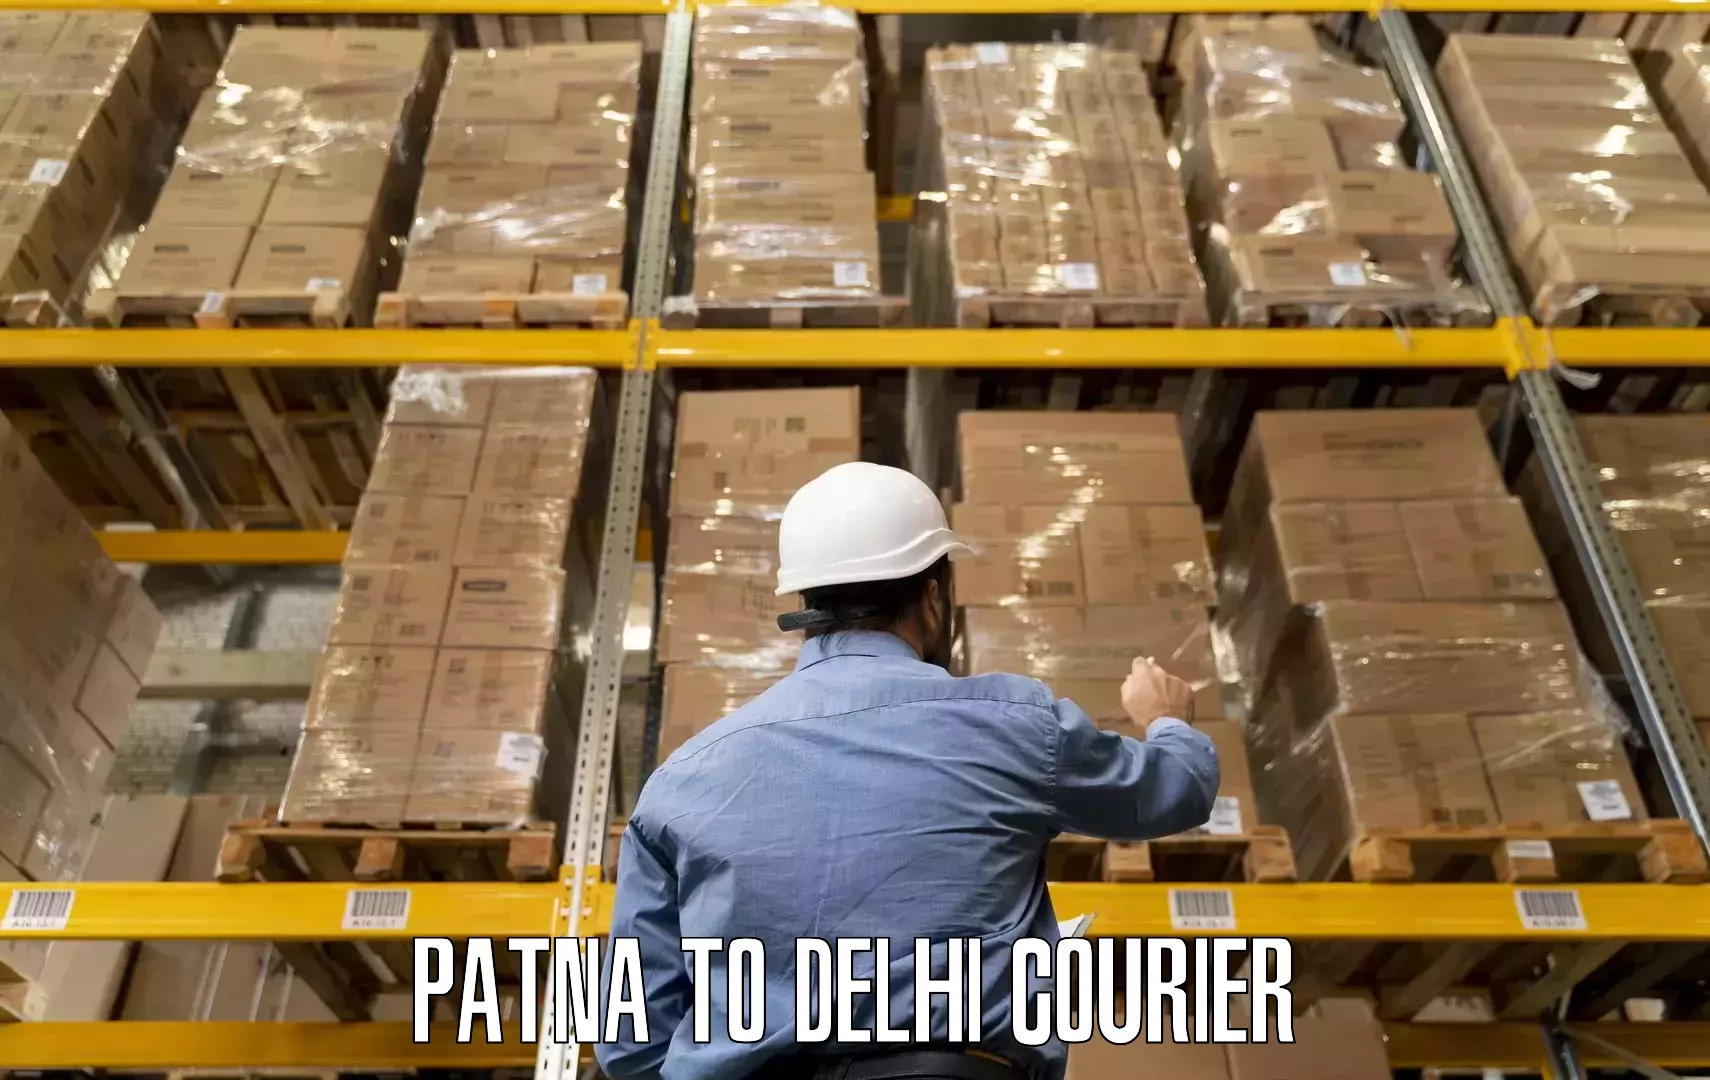 Efficient packing and moving Patna to Krishna Nagar